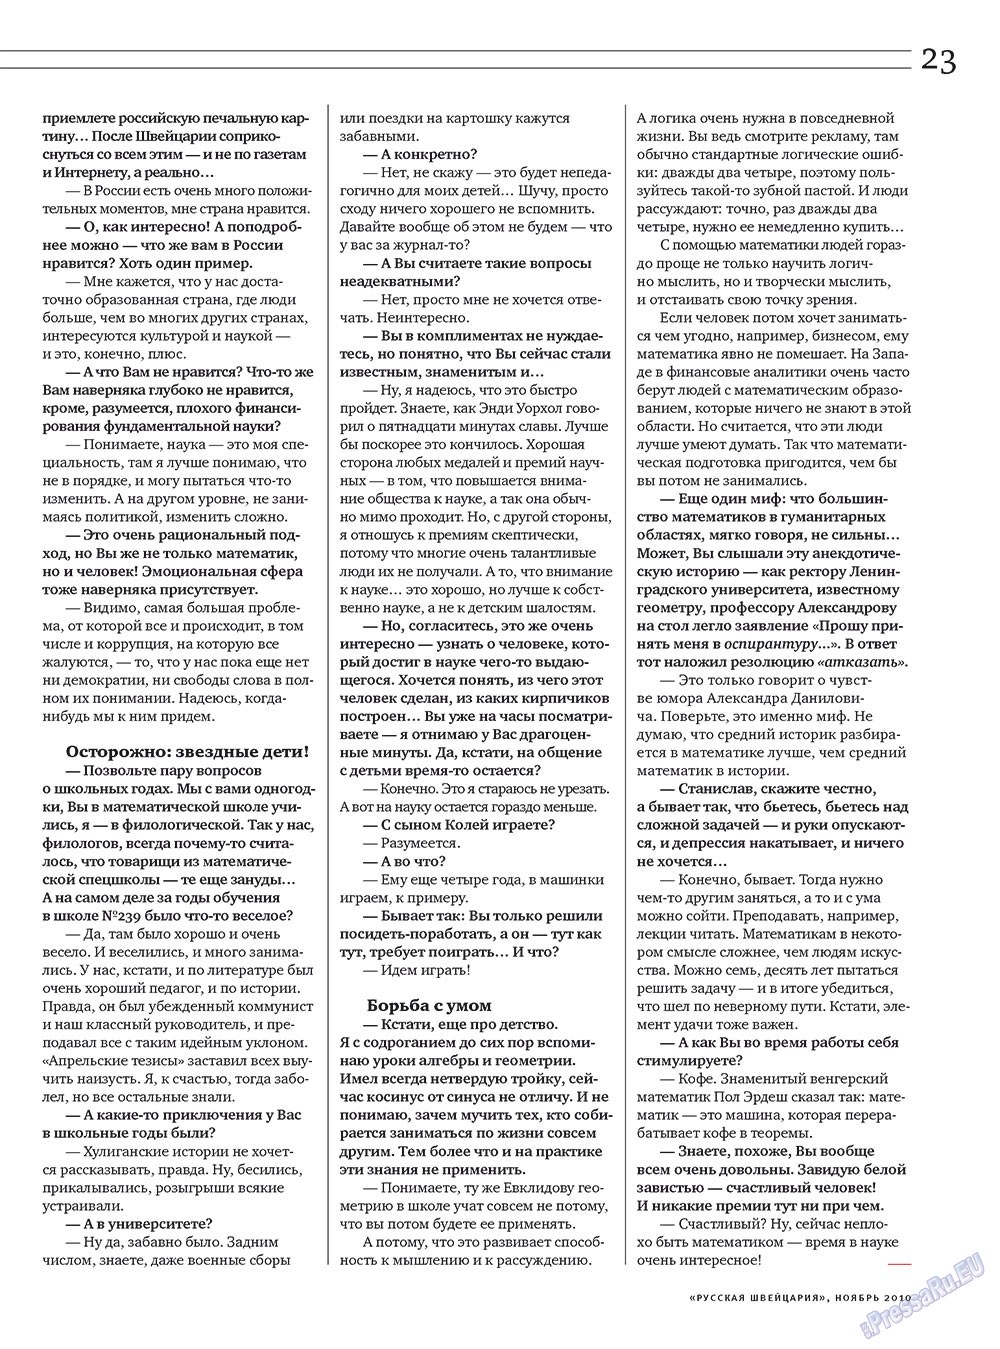 Русская Швейцария, журнал. 2010 №9 стр.23